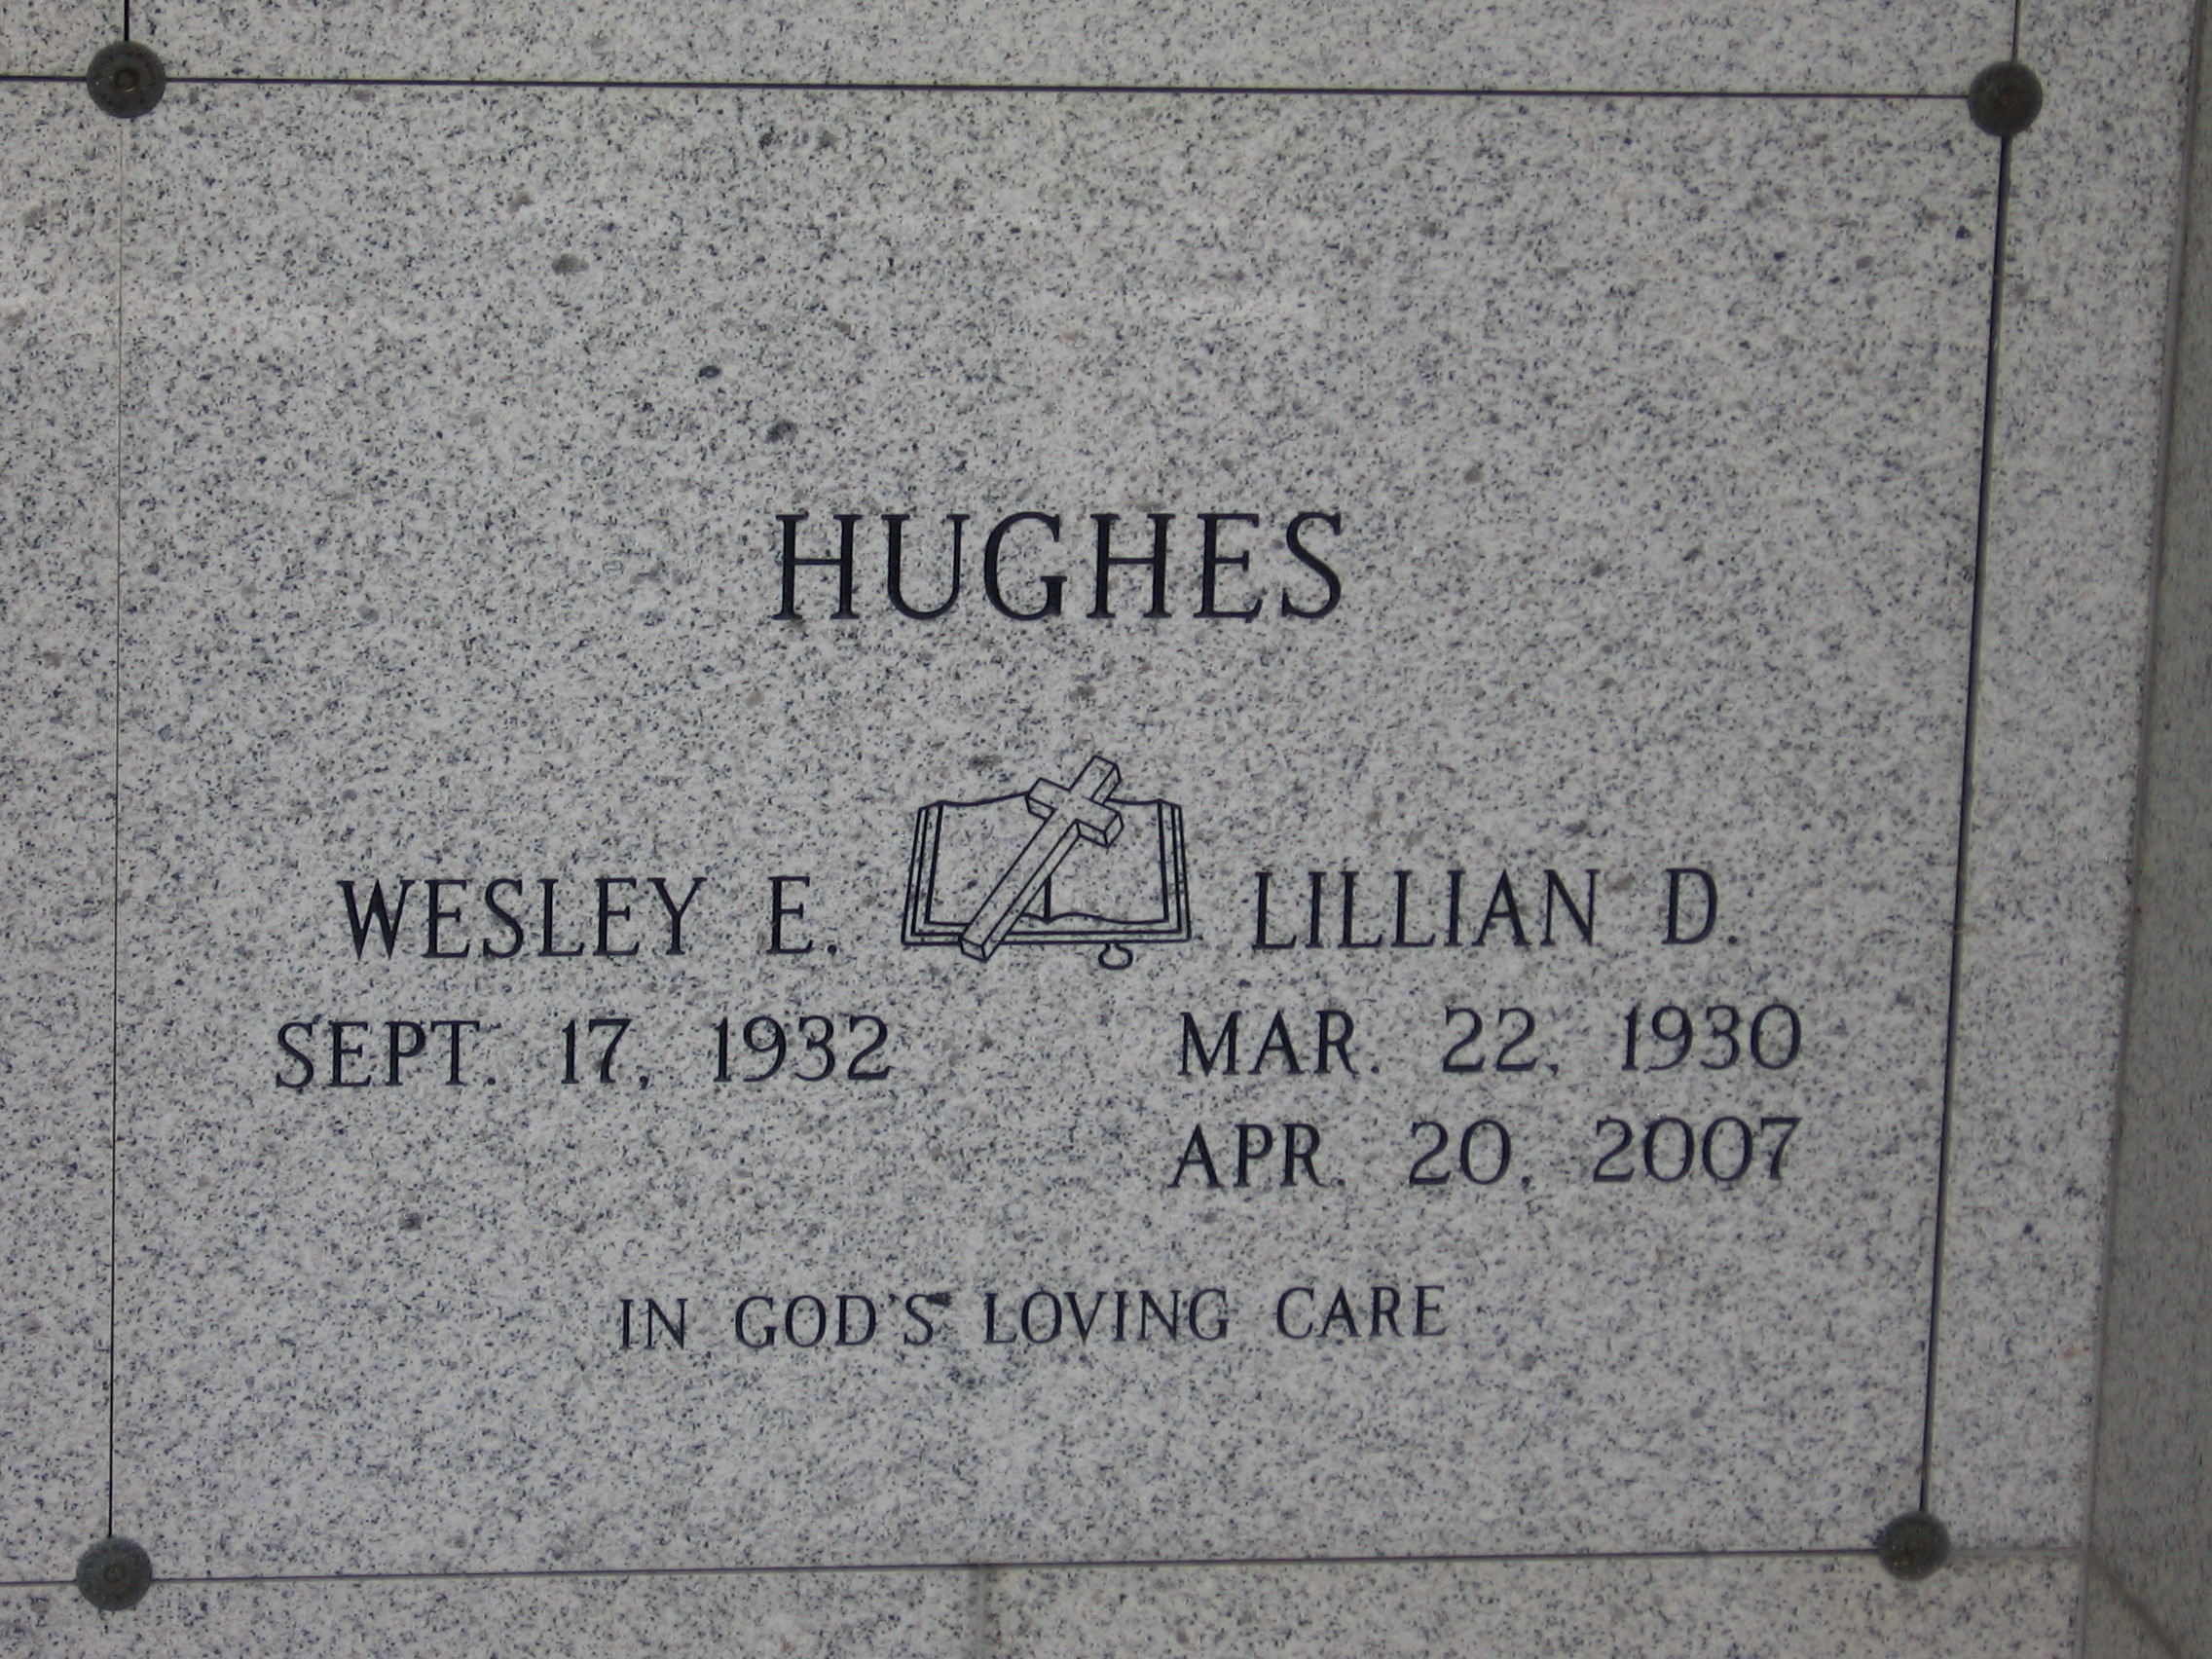 Wesley E Hughes